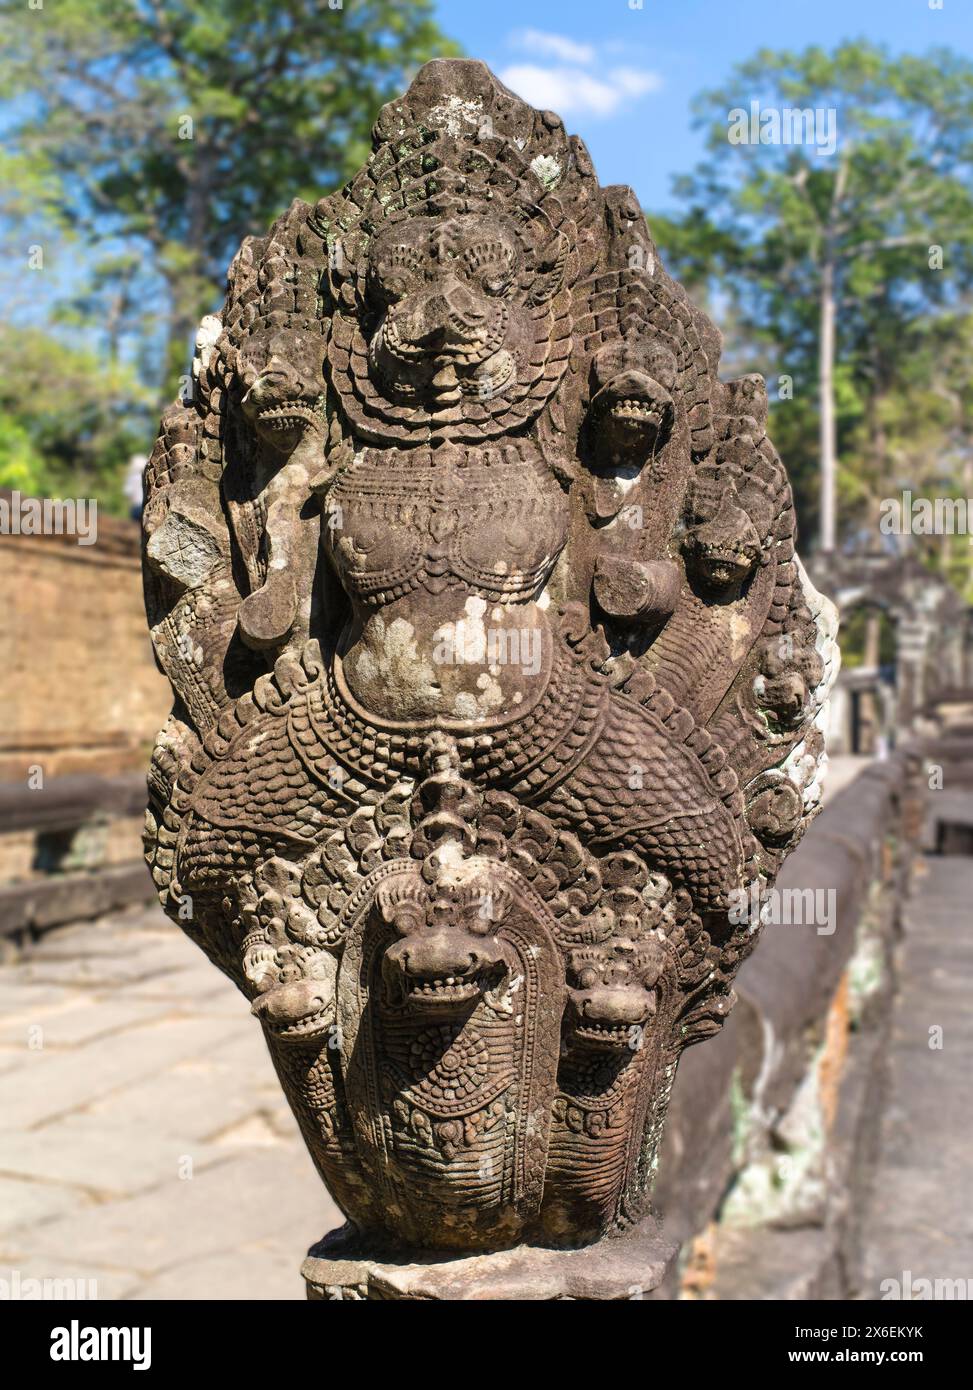 Preah Khan, manchmal auch als Prah Khan bezeichnet, ist ein Tempel in Angkor, Kambodscha, der im 12. Jahrhundert für König Jayavarman VII. Erbaut wurde Stockfoto